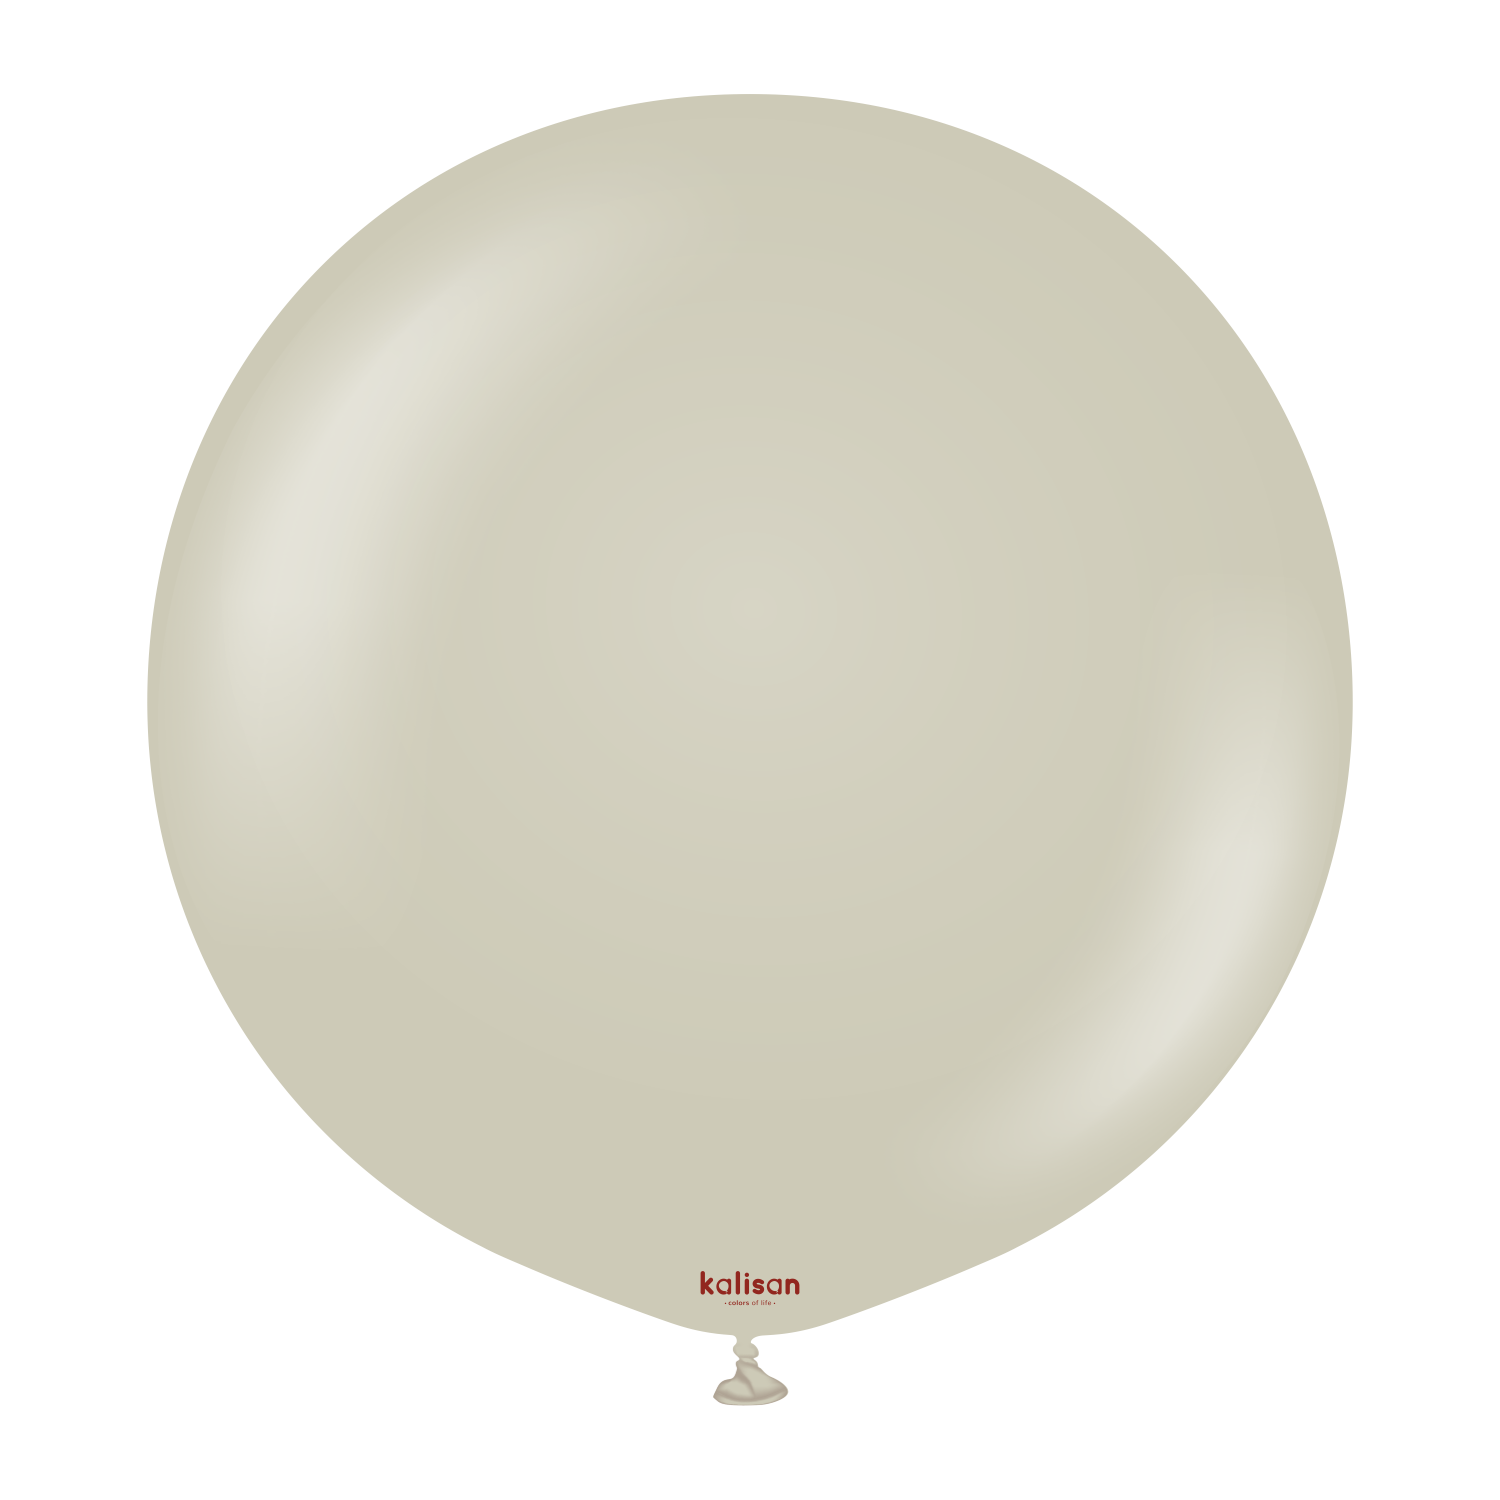 36" Riesenballon Retro Stone (2 Stück)